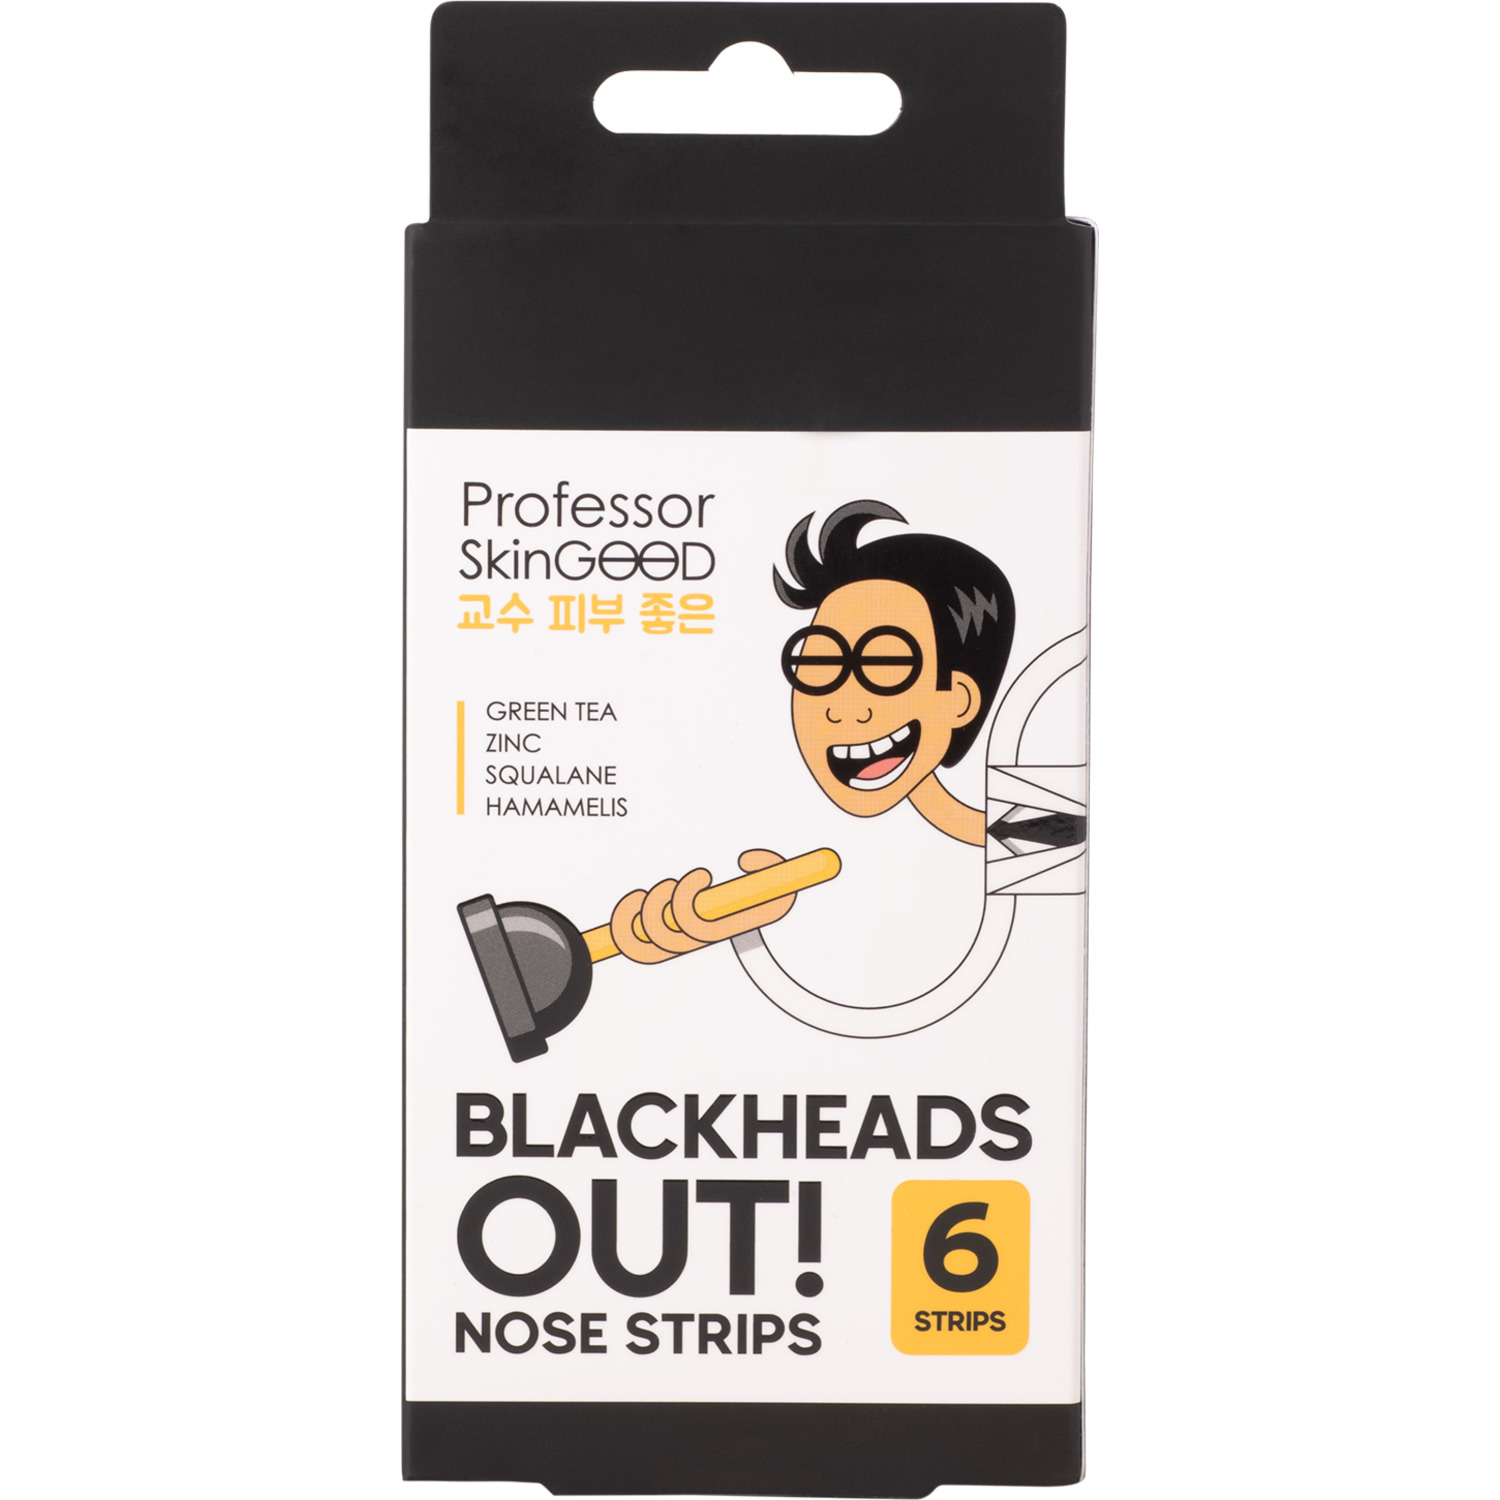 Полоски для носа Professor SkinGood Blackheads out 6 шт пирсинг в крыло носа